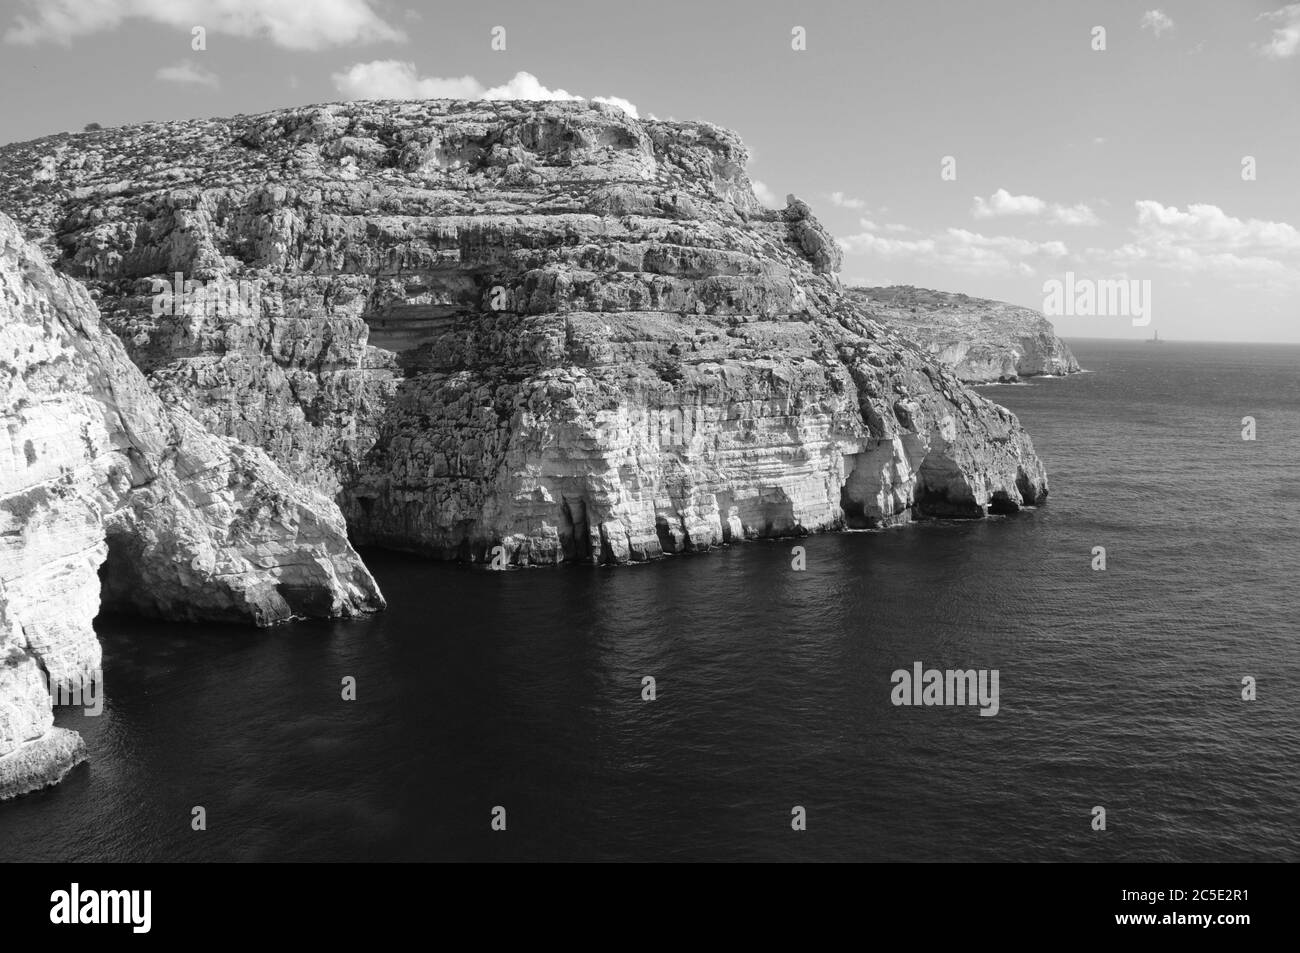 The coast of Malta Island at the tourist hot spot blue hole Stock Photo